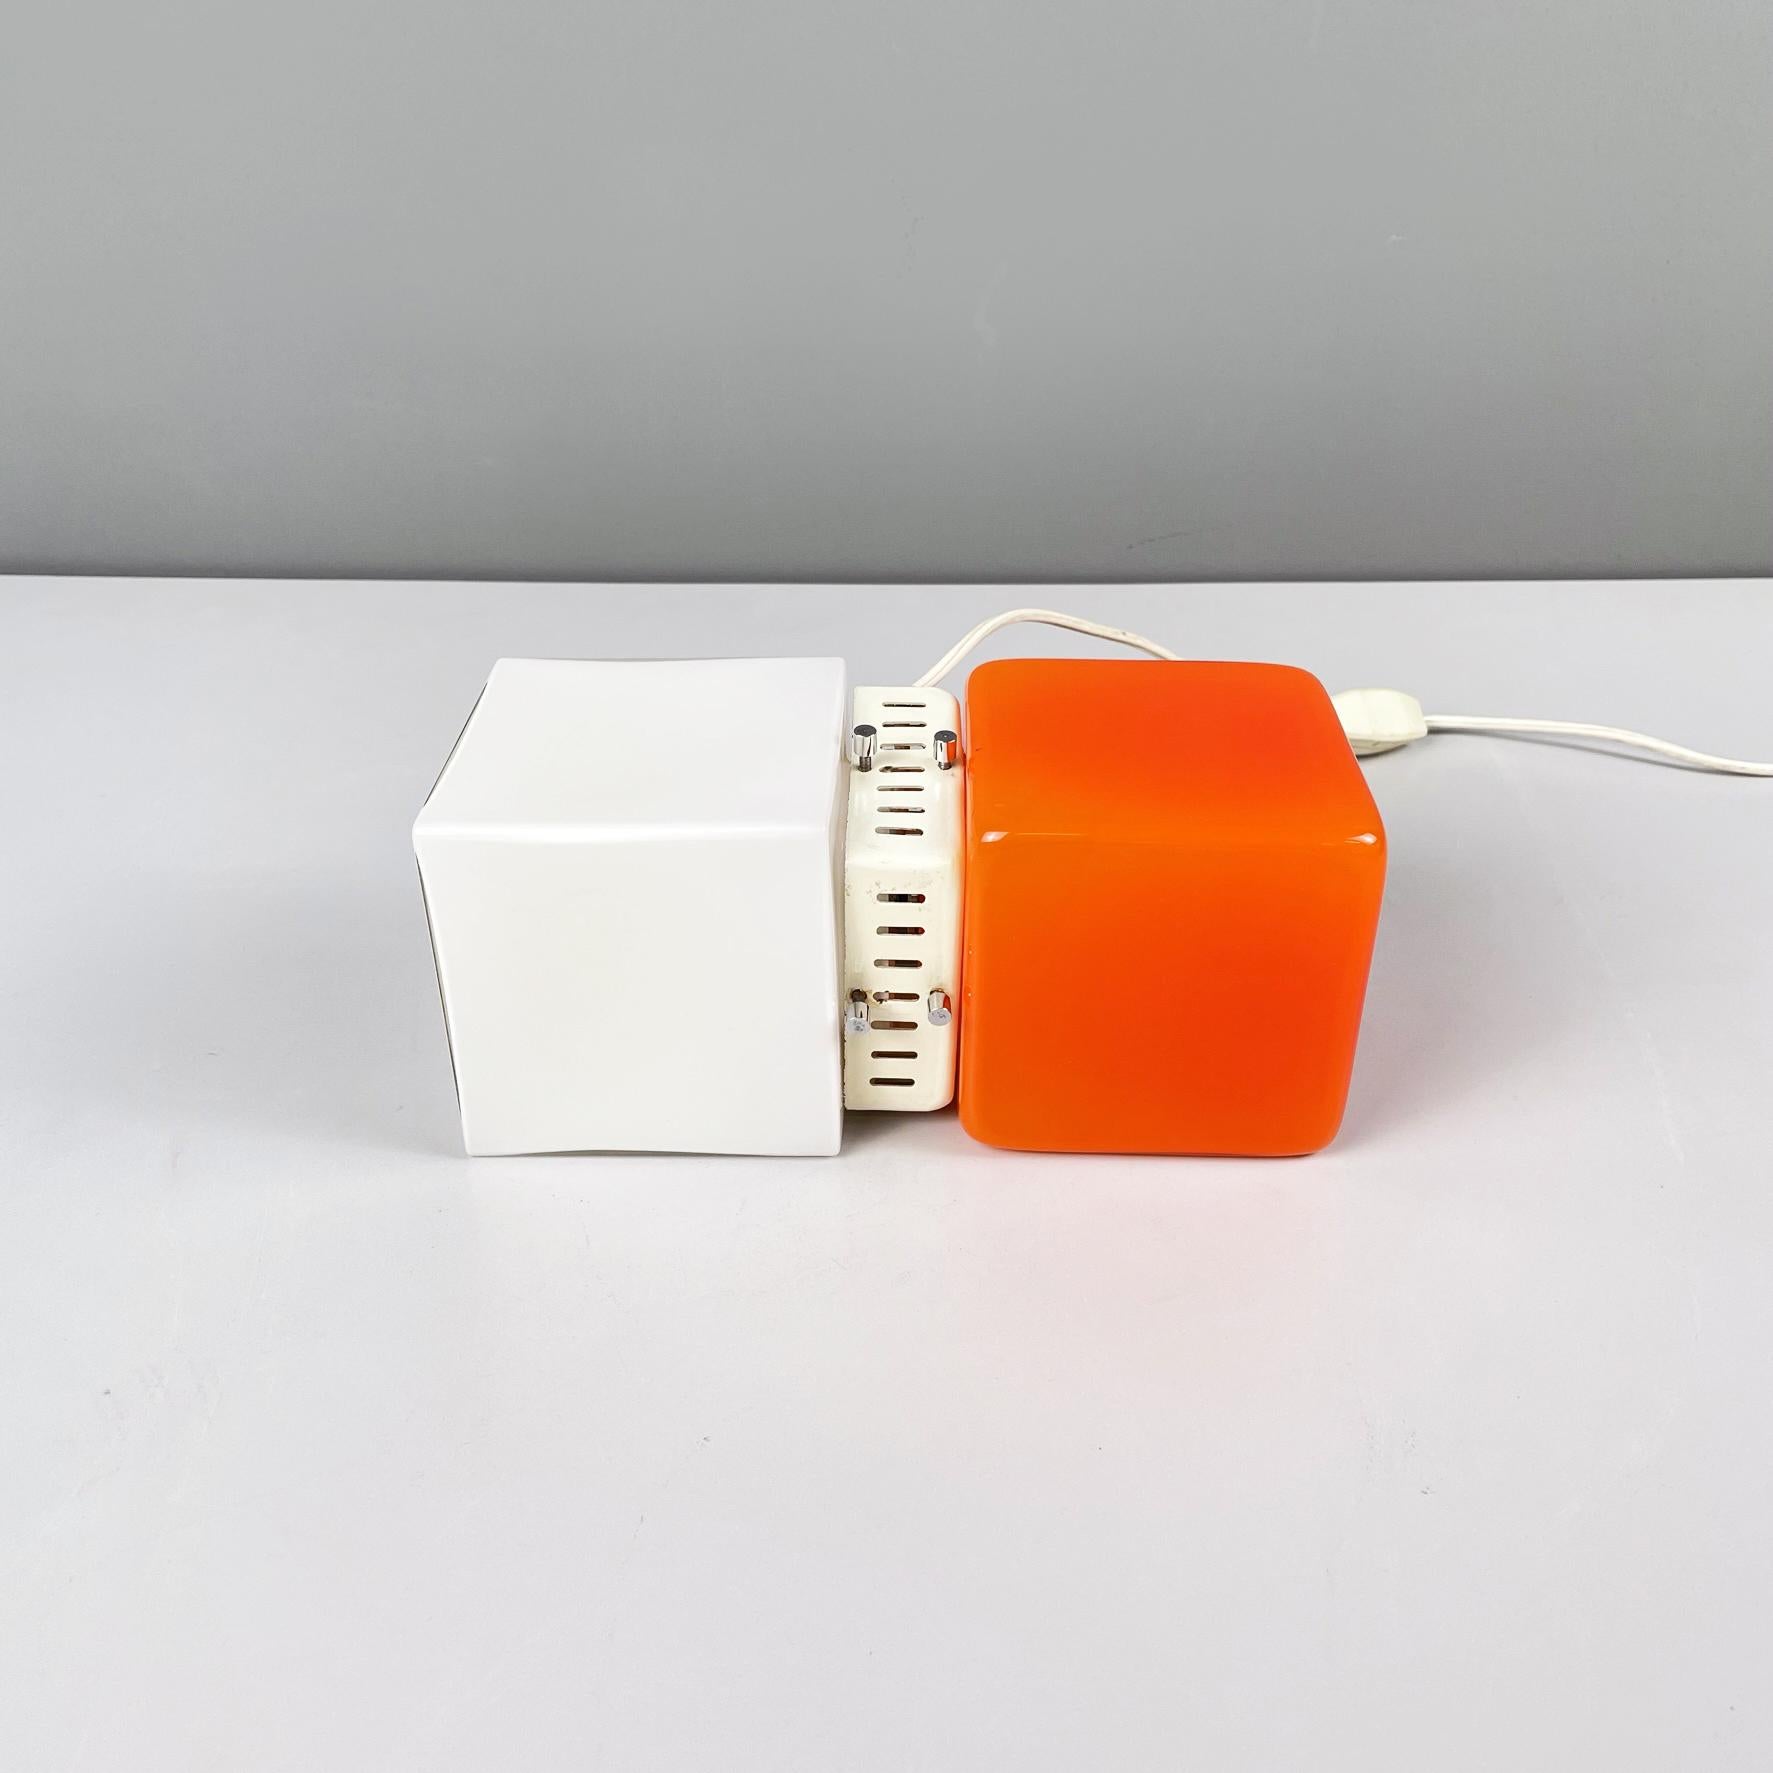 Lampe de bureau italienne de l'ère spatiale en verre orange et opalin avec métal blanc, années 1970
Fantastique lampe de table vintage avec double diffuseur carré en verre opalin d'un côté et en verre orange vif de l'autre. Le centre est une